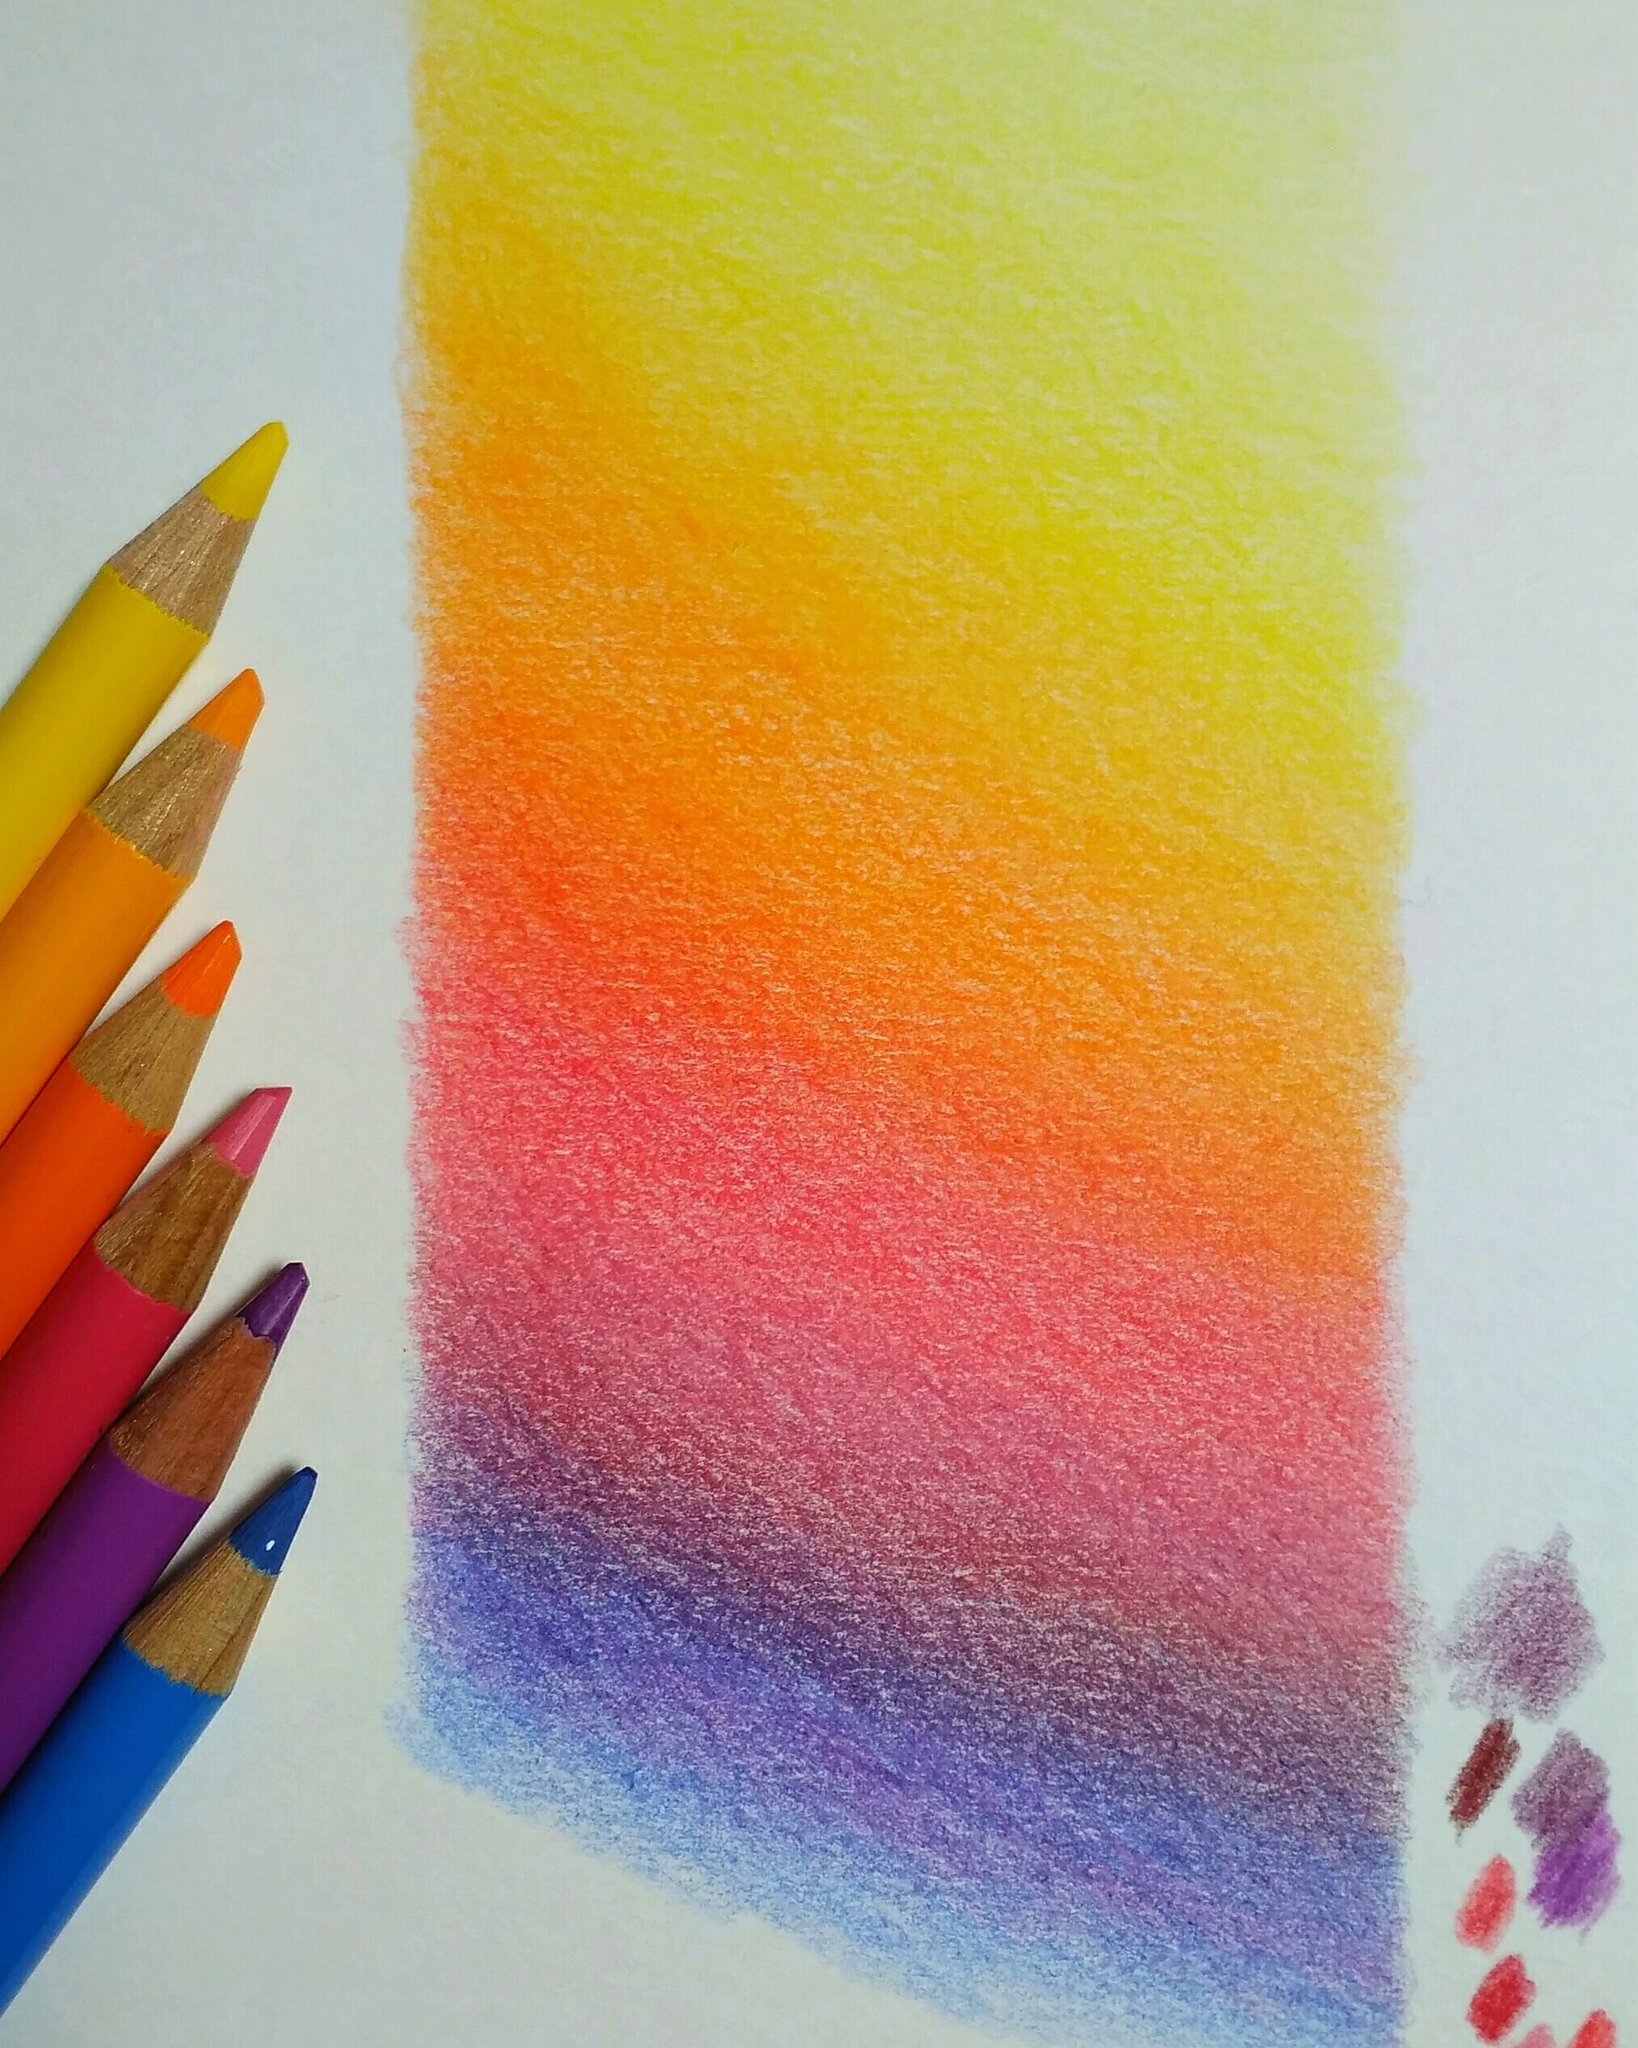 تويتر Tomo على تويتر 夕暮れ時の水平線のような グラデーションになりました 色鉛筆 色 グラデーション 夕焼け 練習 Colorpencil Color Gradation Sunset Study T Co U42waz7bib